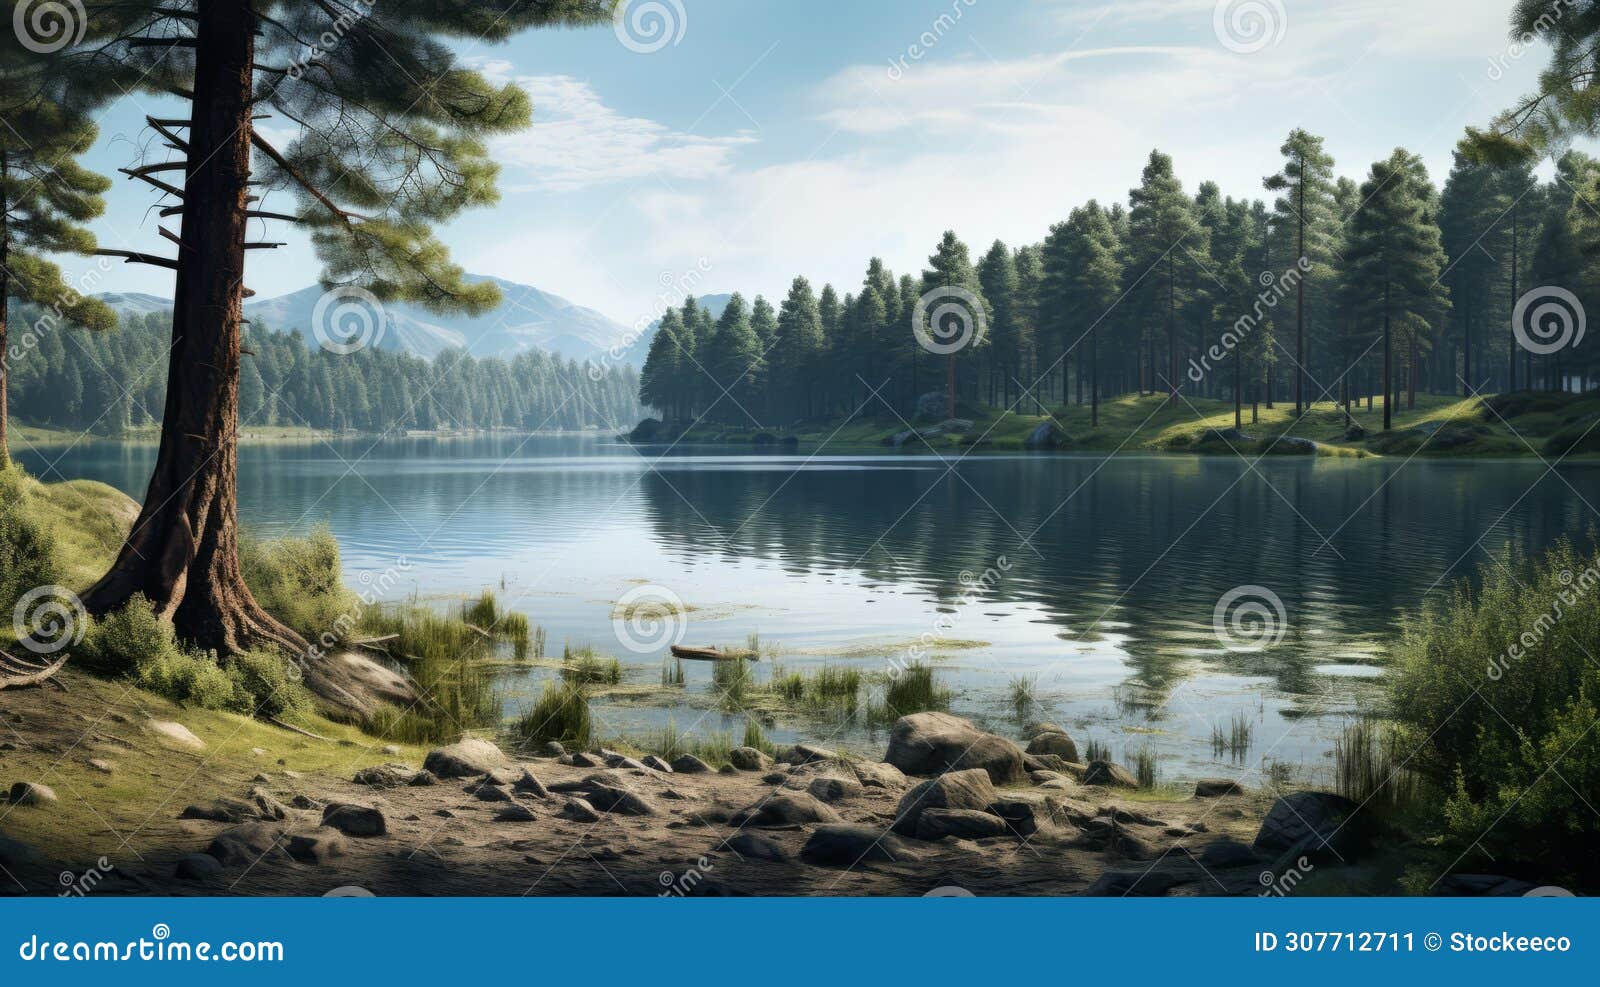 glen of a lake: a hyper-realistic xbox 360 graphics scene